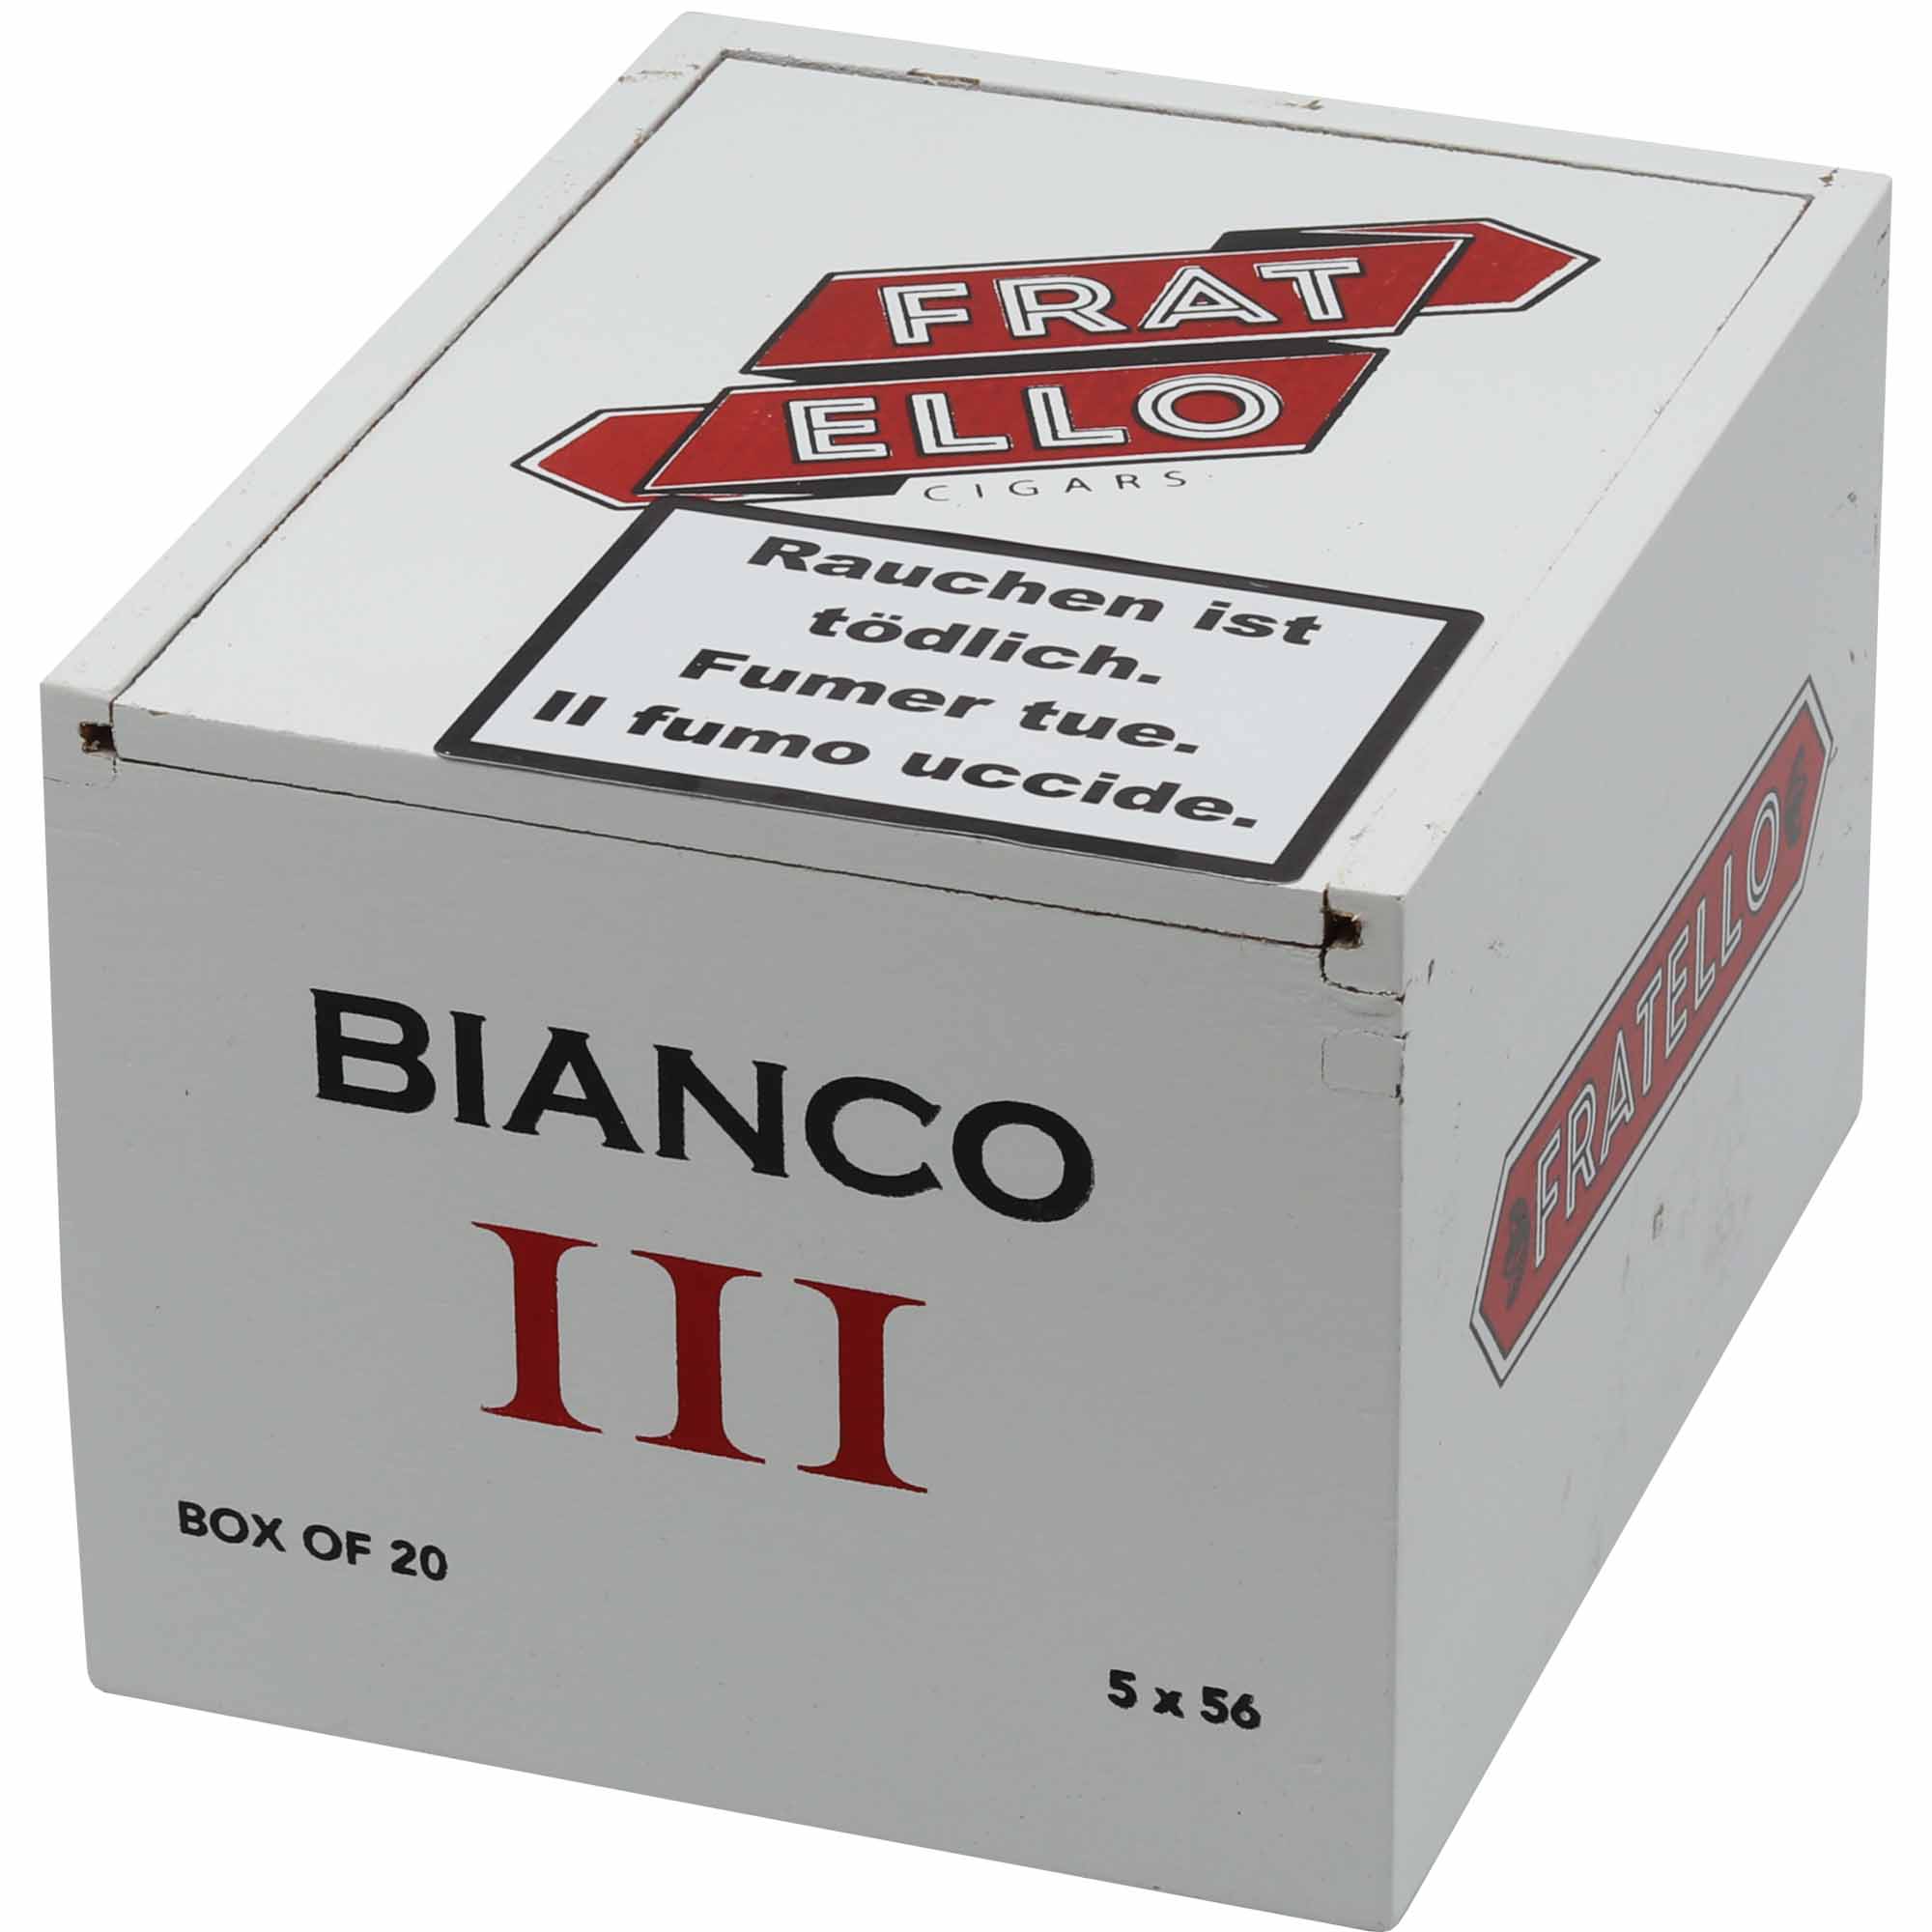 Fratello Bianco III Zigarre im Robusto Format Zigarrenbox geschlossen